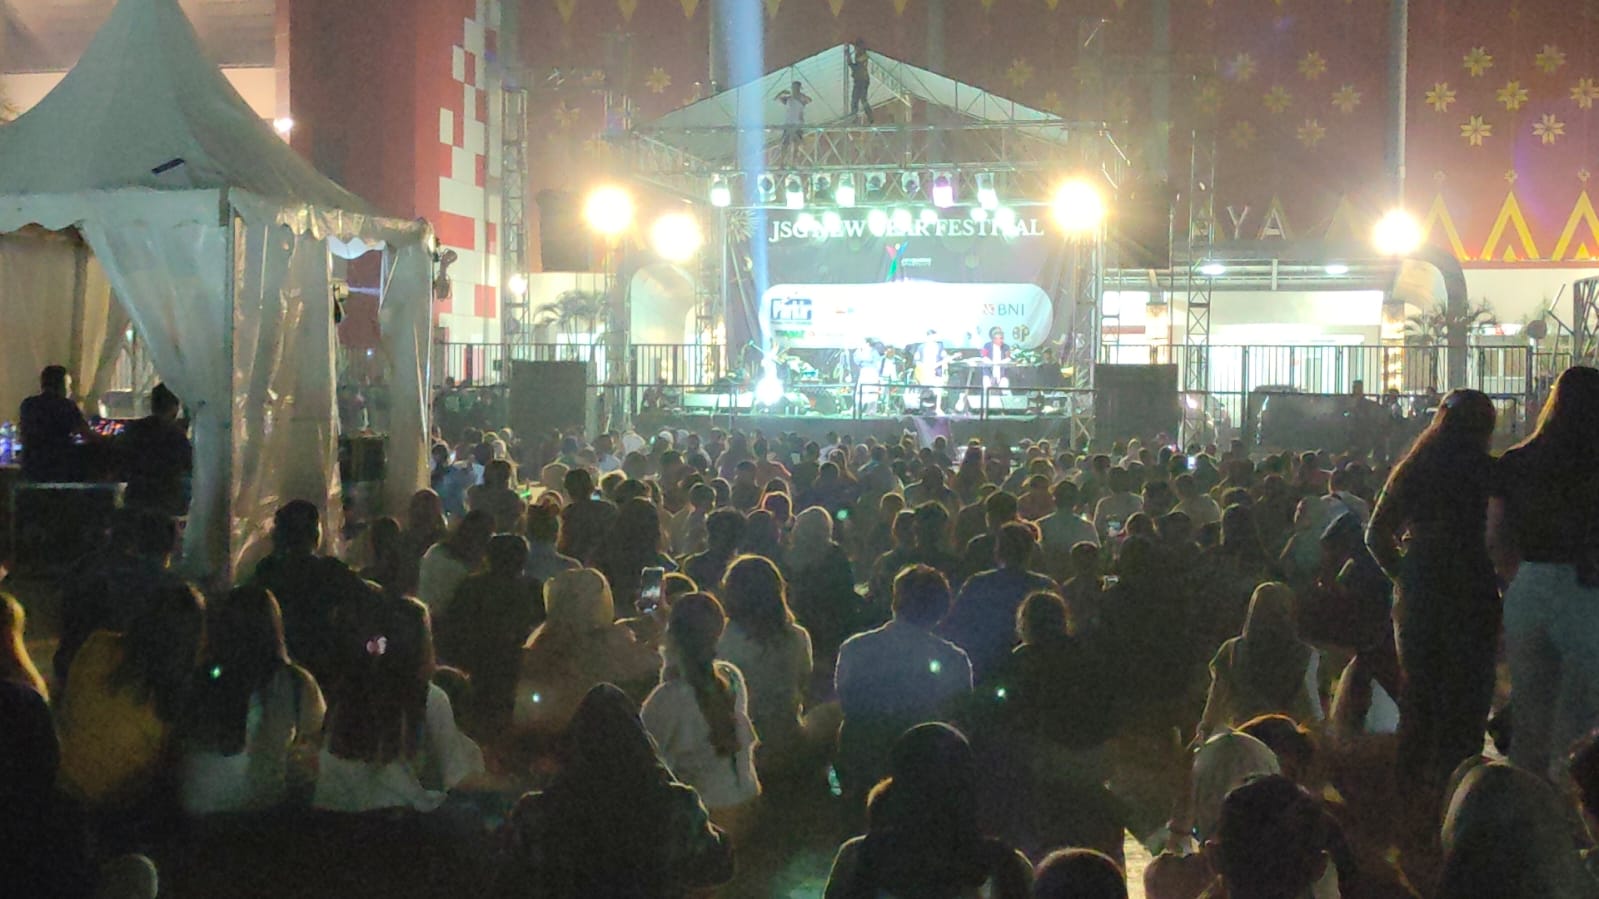 Jelang Malam Pergantian Tahun, Ada 'JSC New Year Festival' di Pelataran Stadion Jakabaring